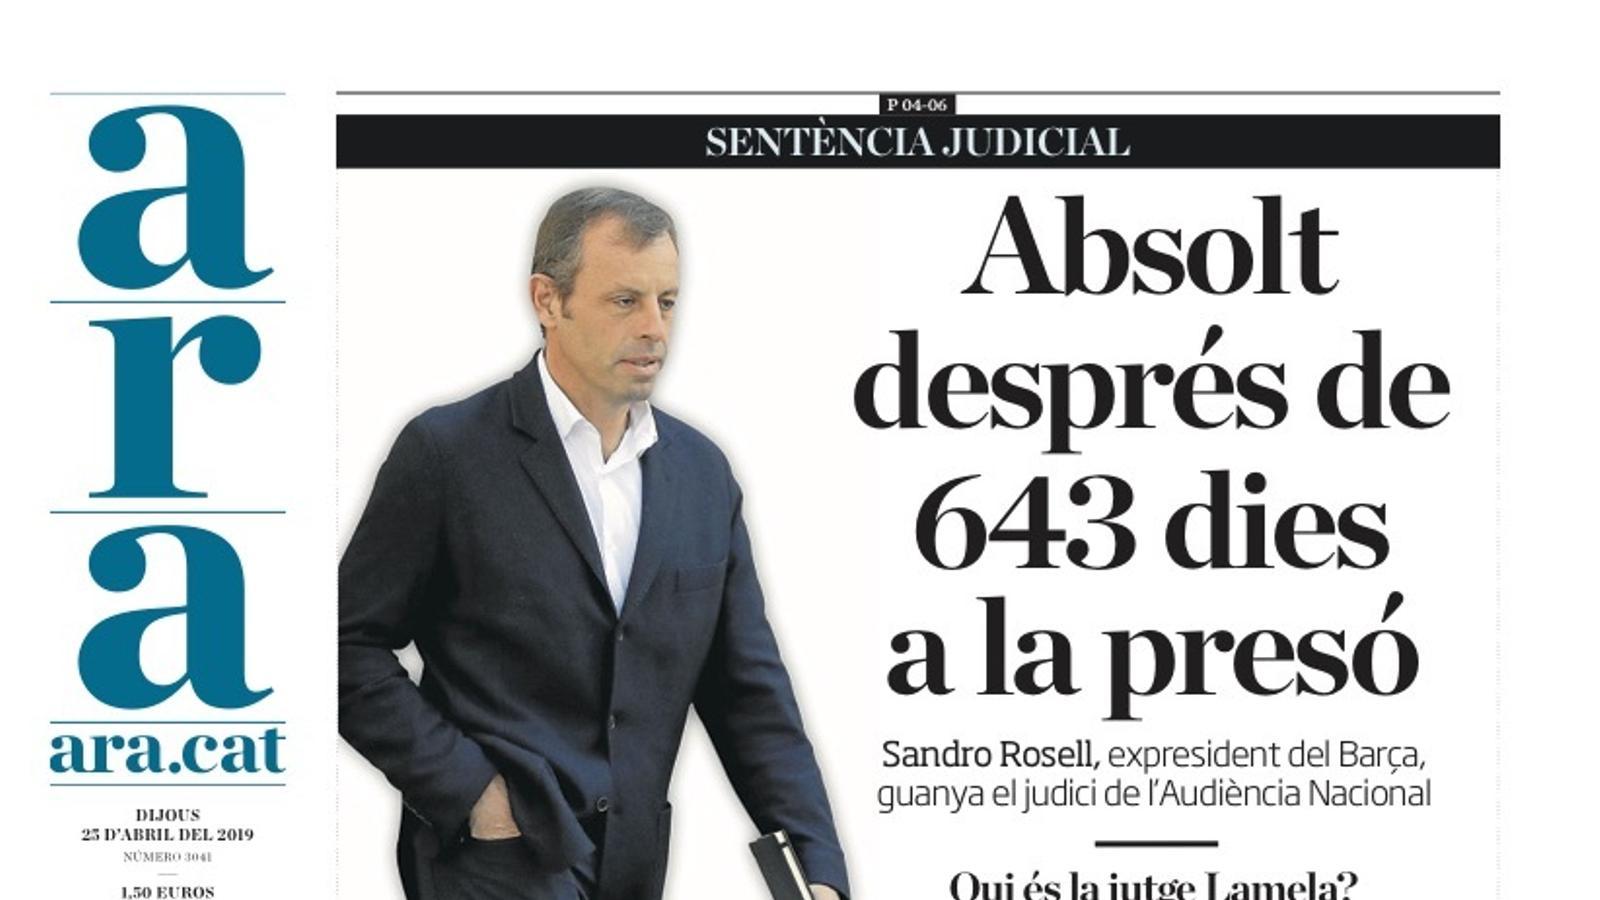 "Absolt després de 643 dies a la presó", portada de l'ARA